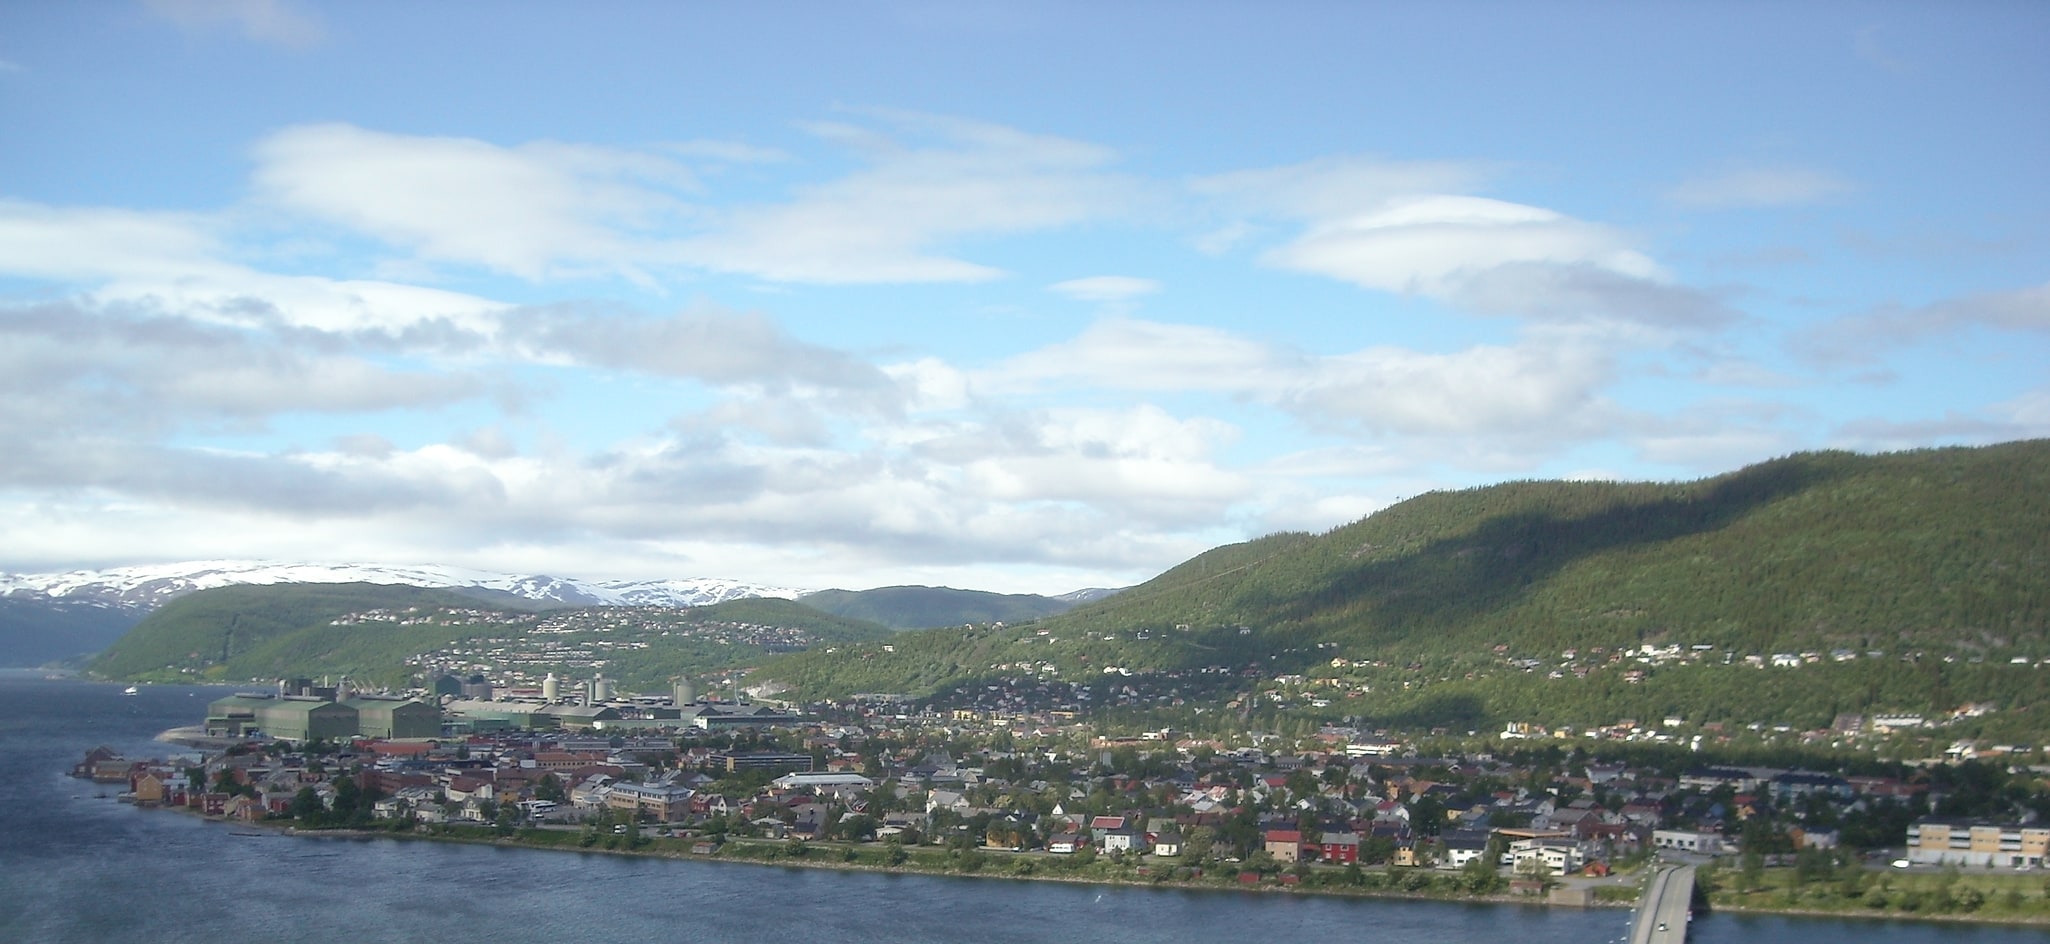 Mosjøen, Norway